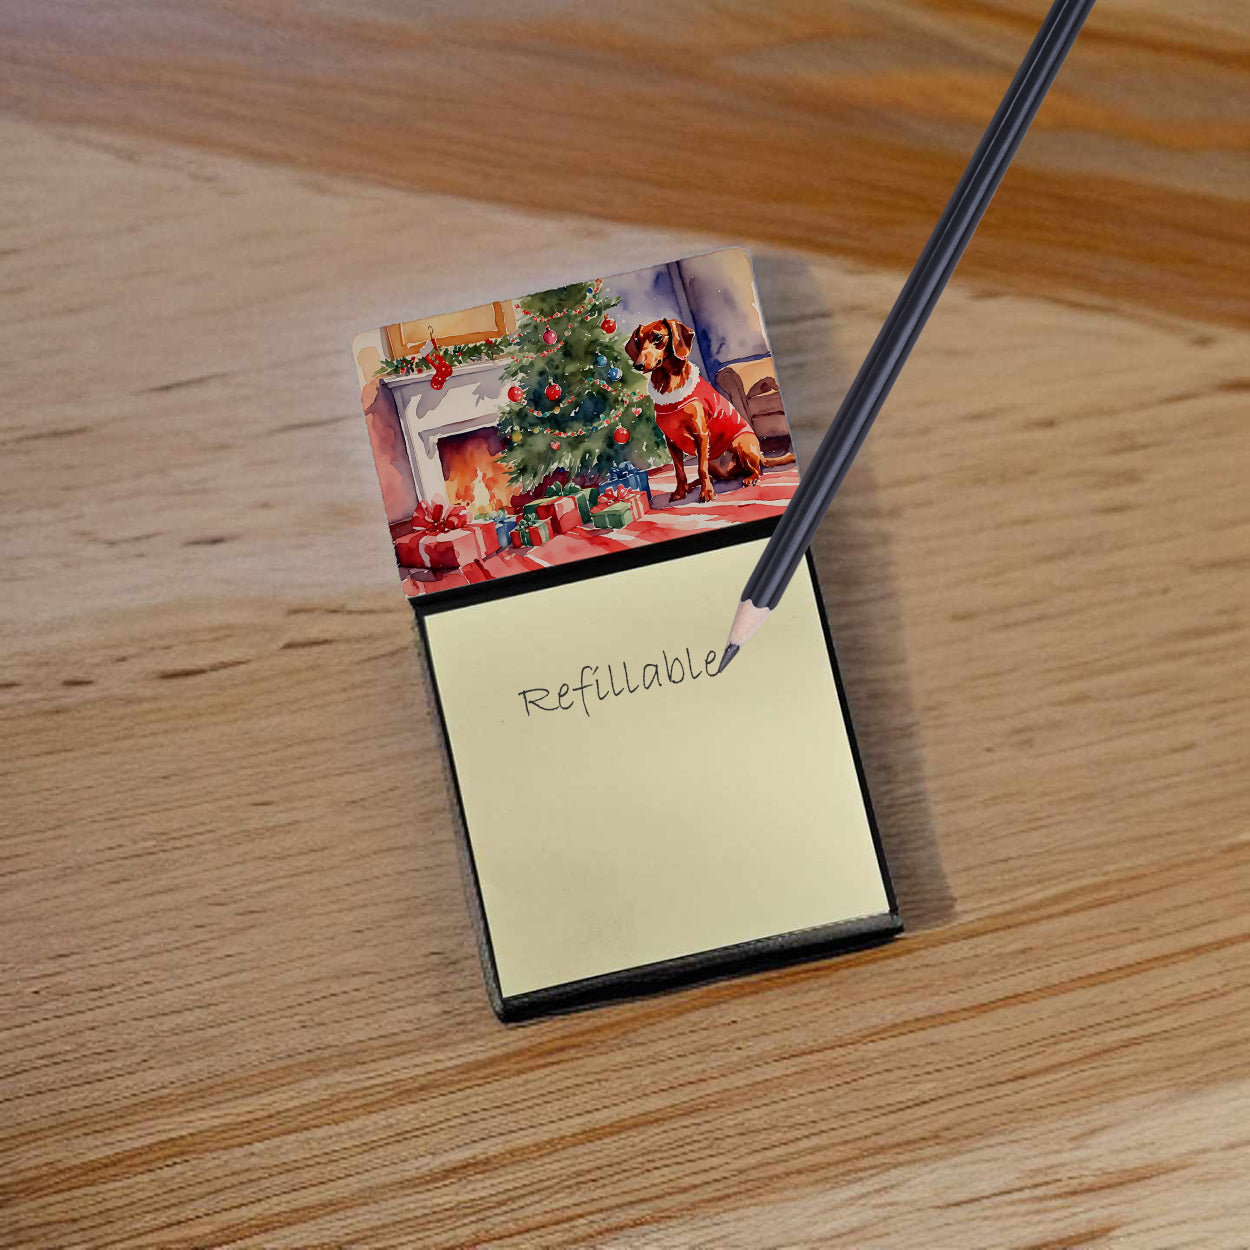 Buy this Dachshund Cozy Christmas Sticky Note Holder